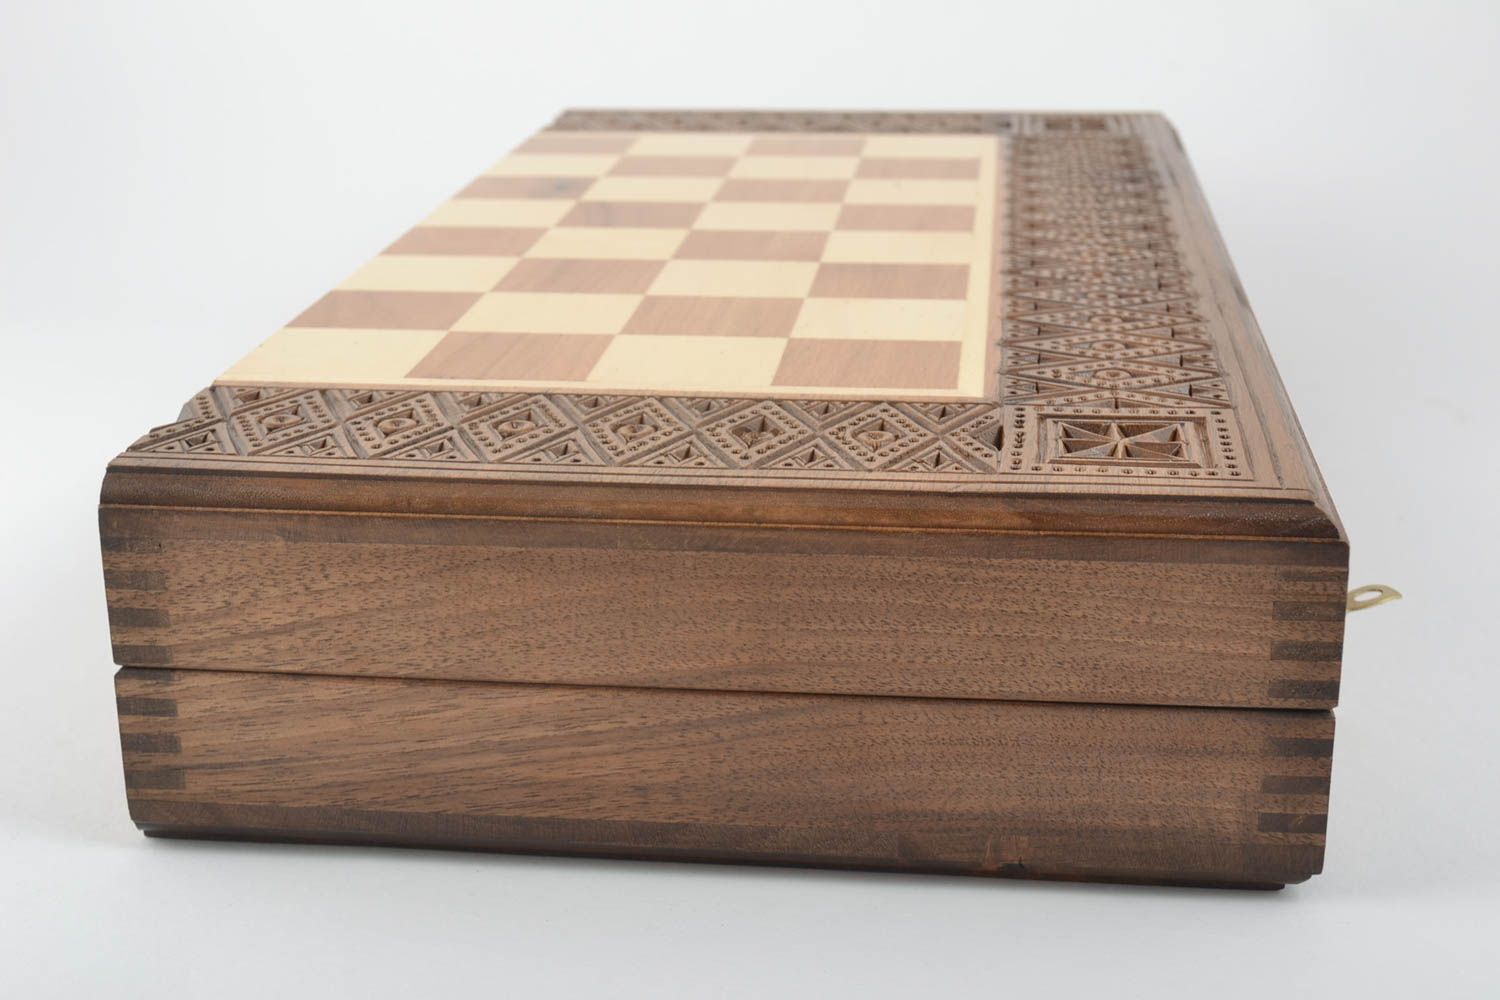 Tablero de ajedrez hecho a mano de madera elemento decorativo regalo original foto 4